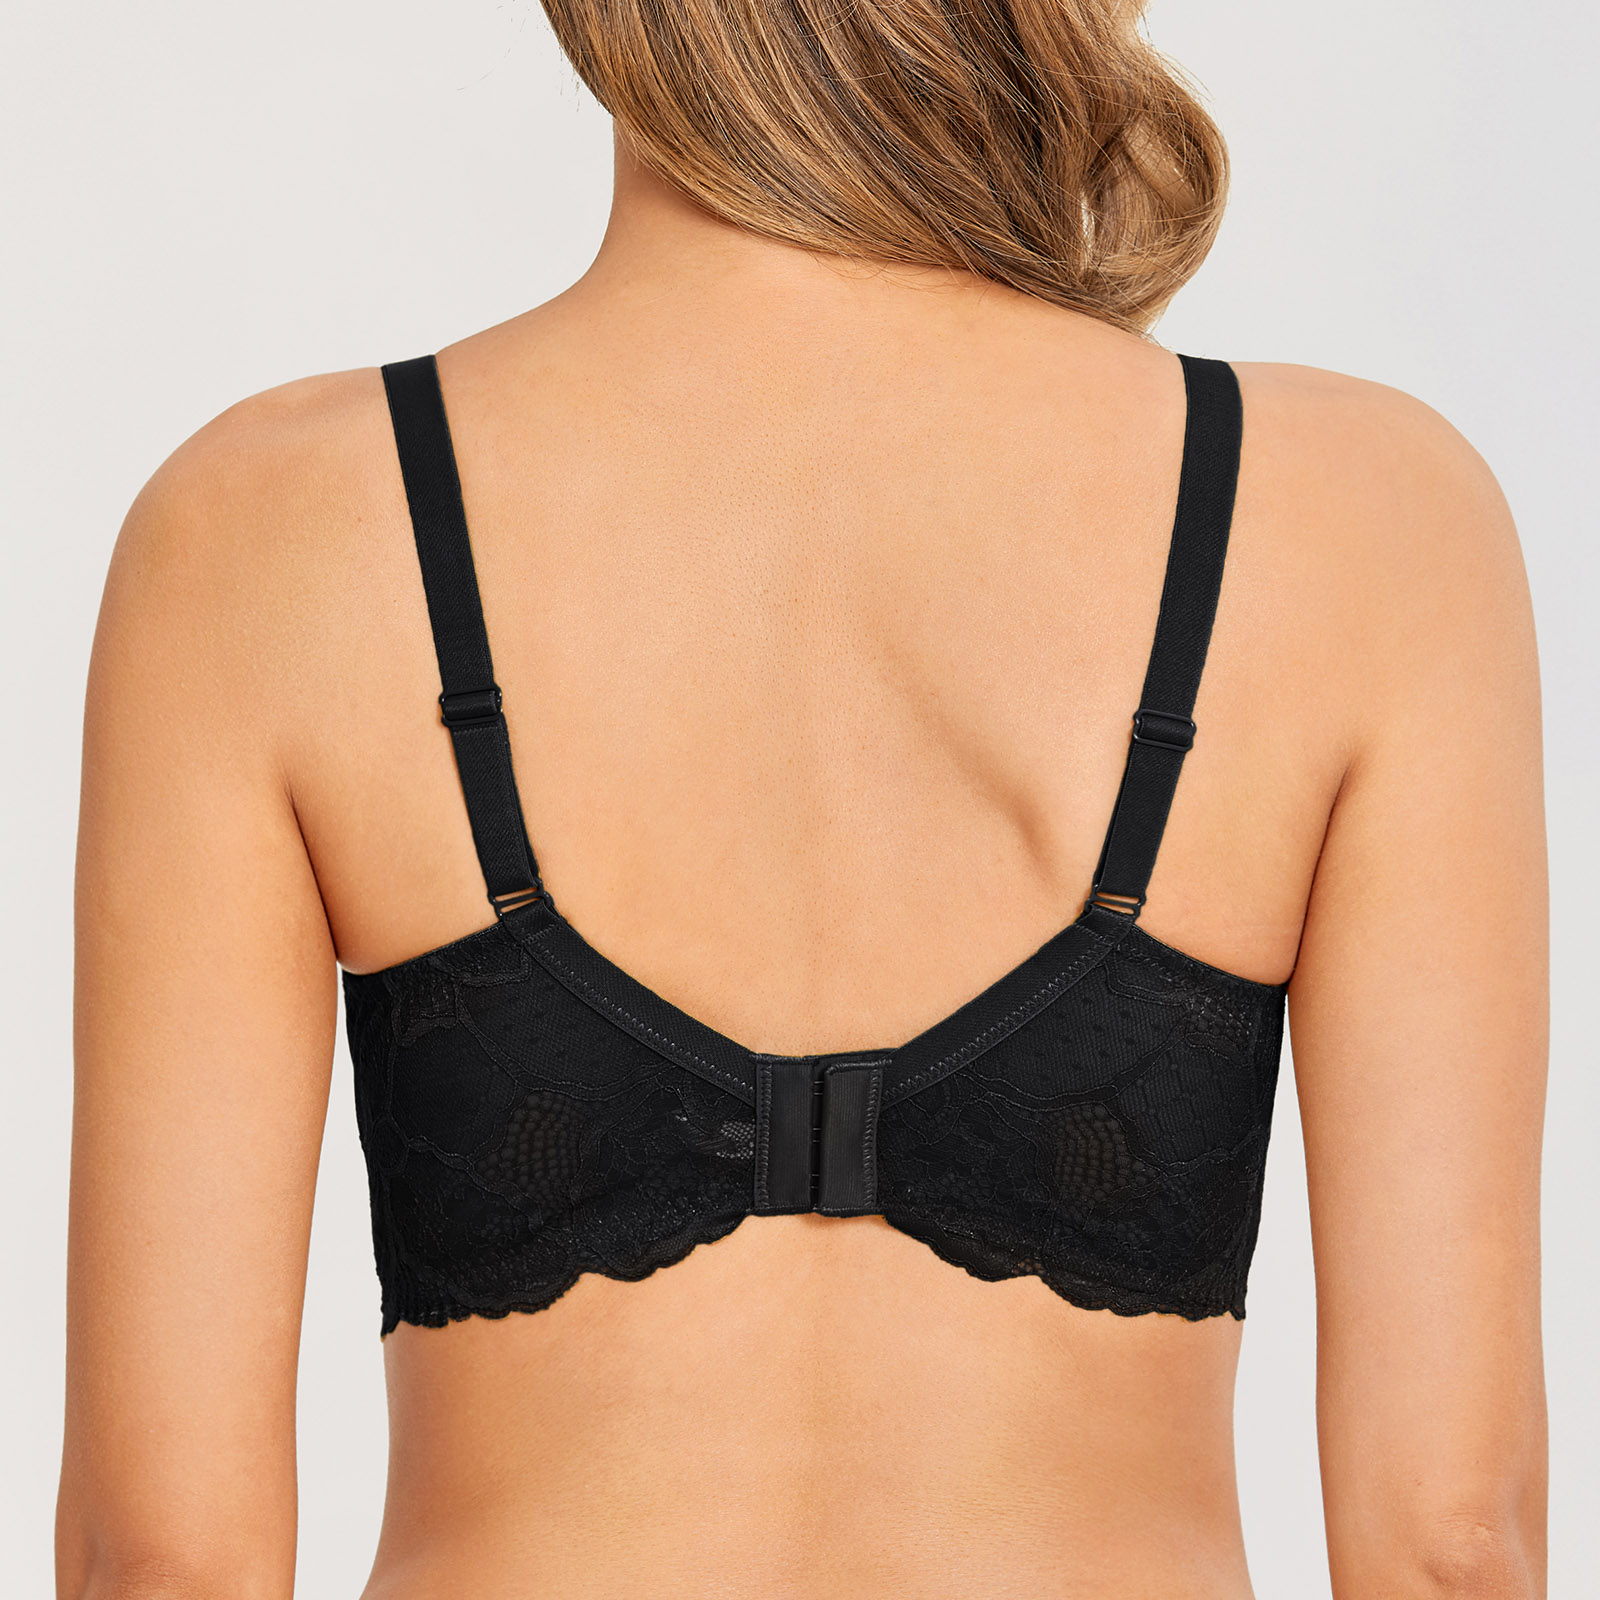 Dobreva Women S Minimizer Underwire Bra Lace Unlined Plus Size Full Coverage Ebay